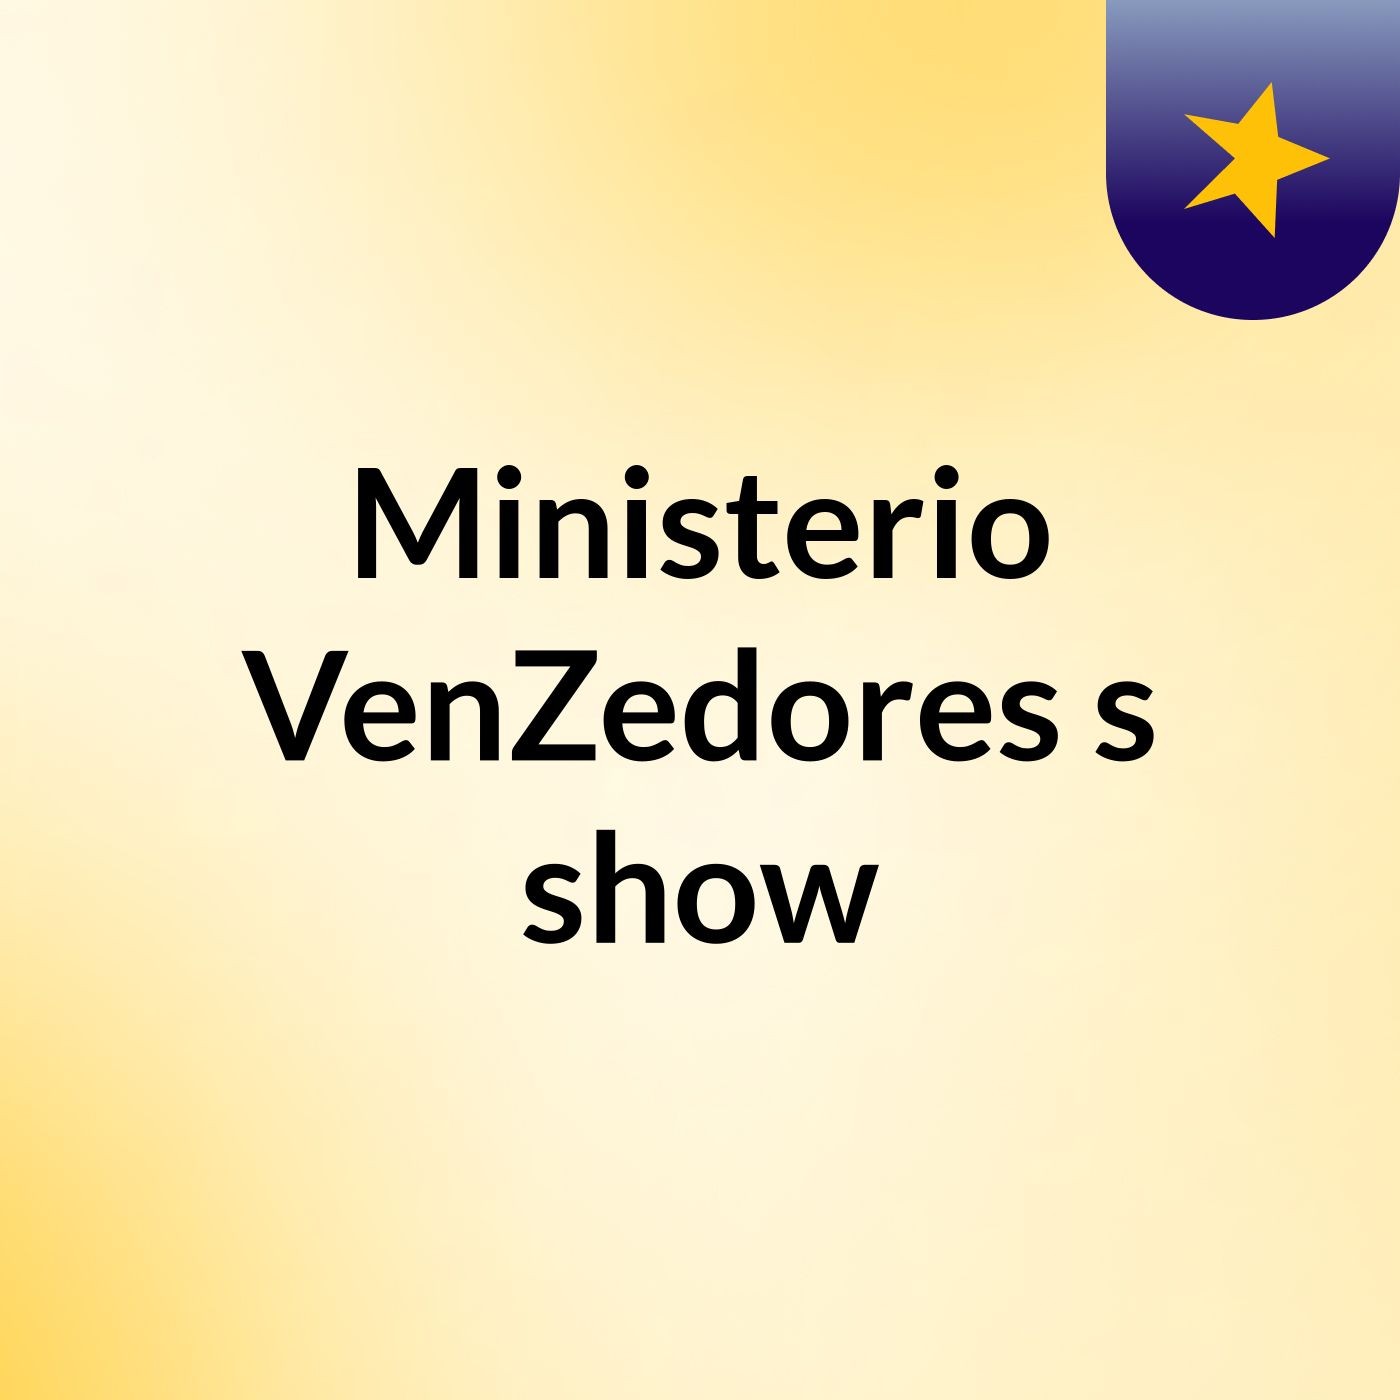 Ministerio VenZedores's show